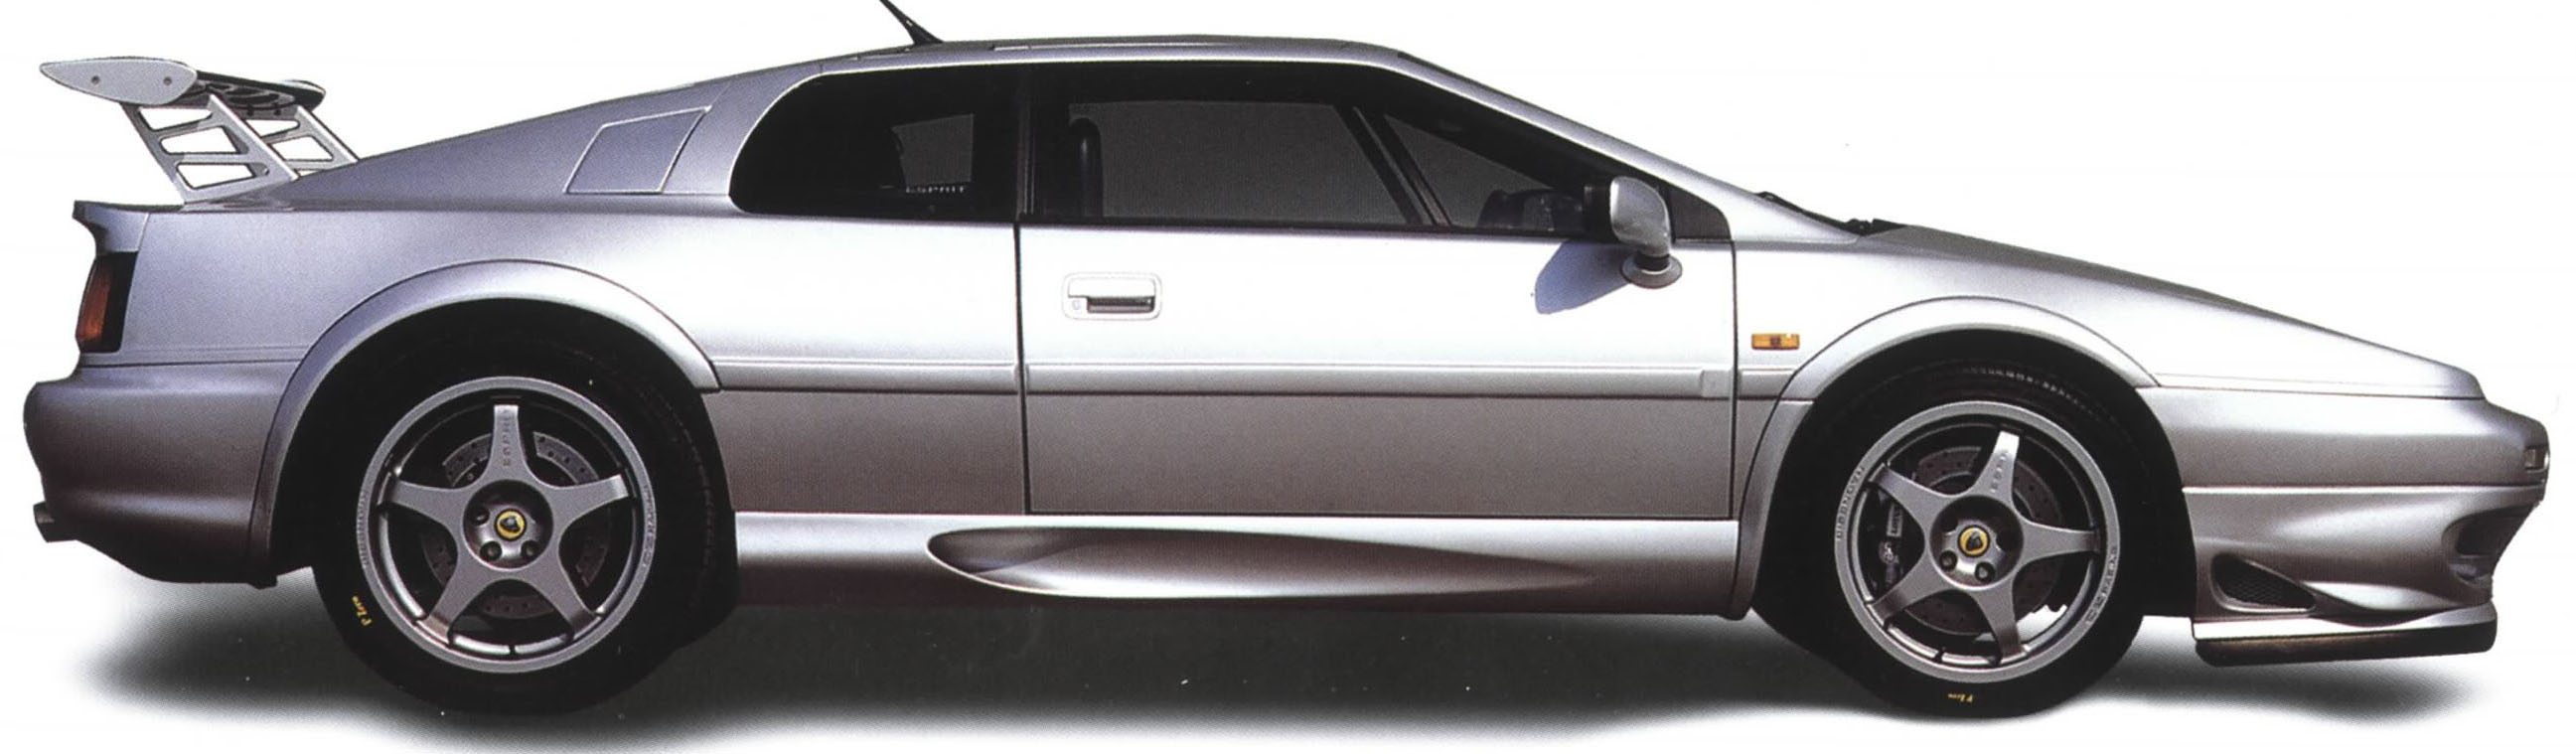 Rueda de aleación de metal cromo Polvo Tapas De La Válvula Lotus Esprit S4 1989-2003 